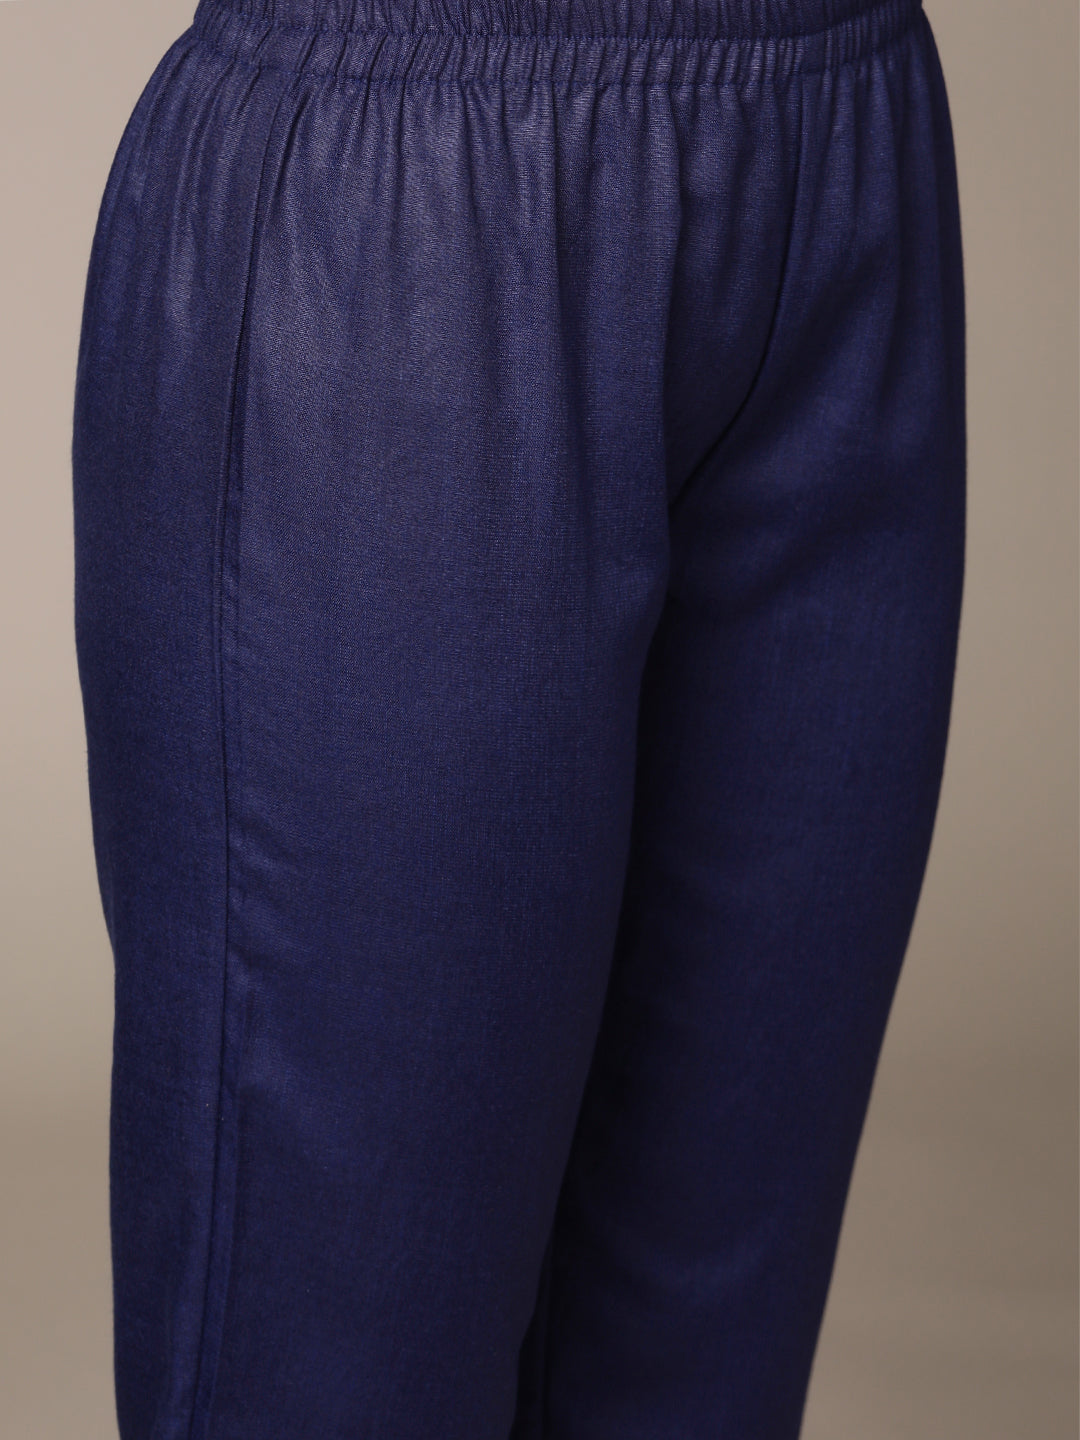 Anubhutee Women's Blue Grey Cotton Kantha Kurta Set with Trousers